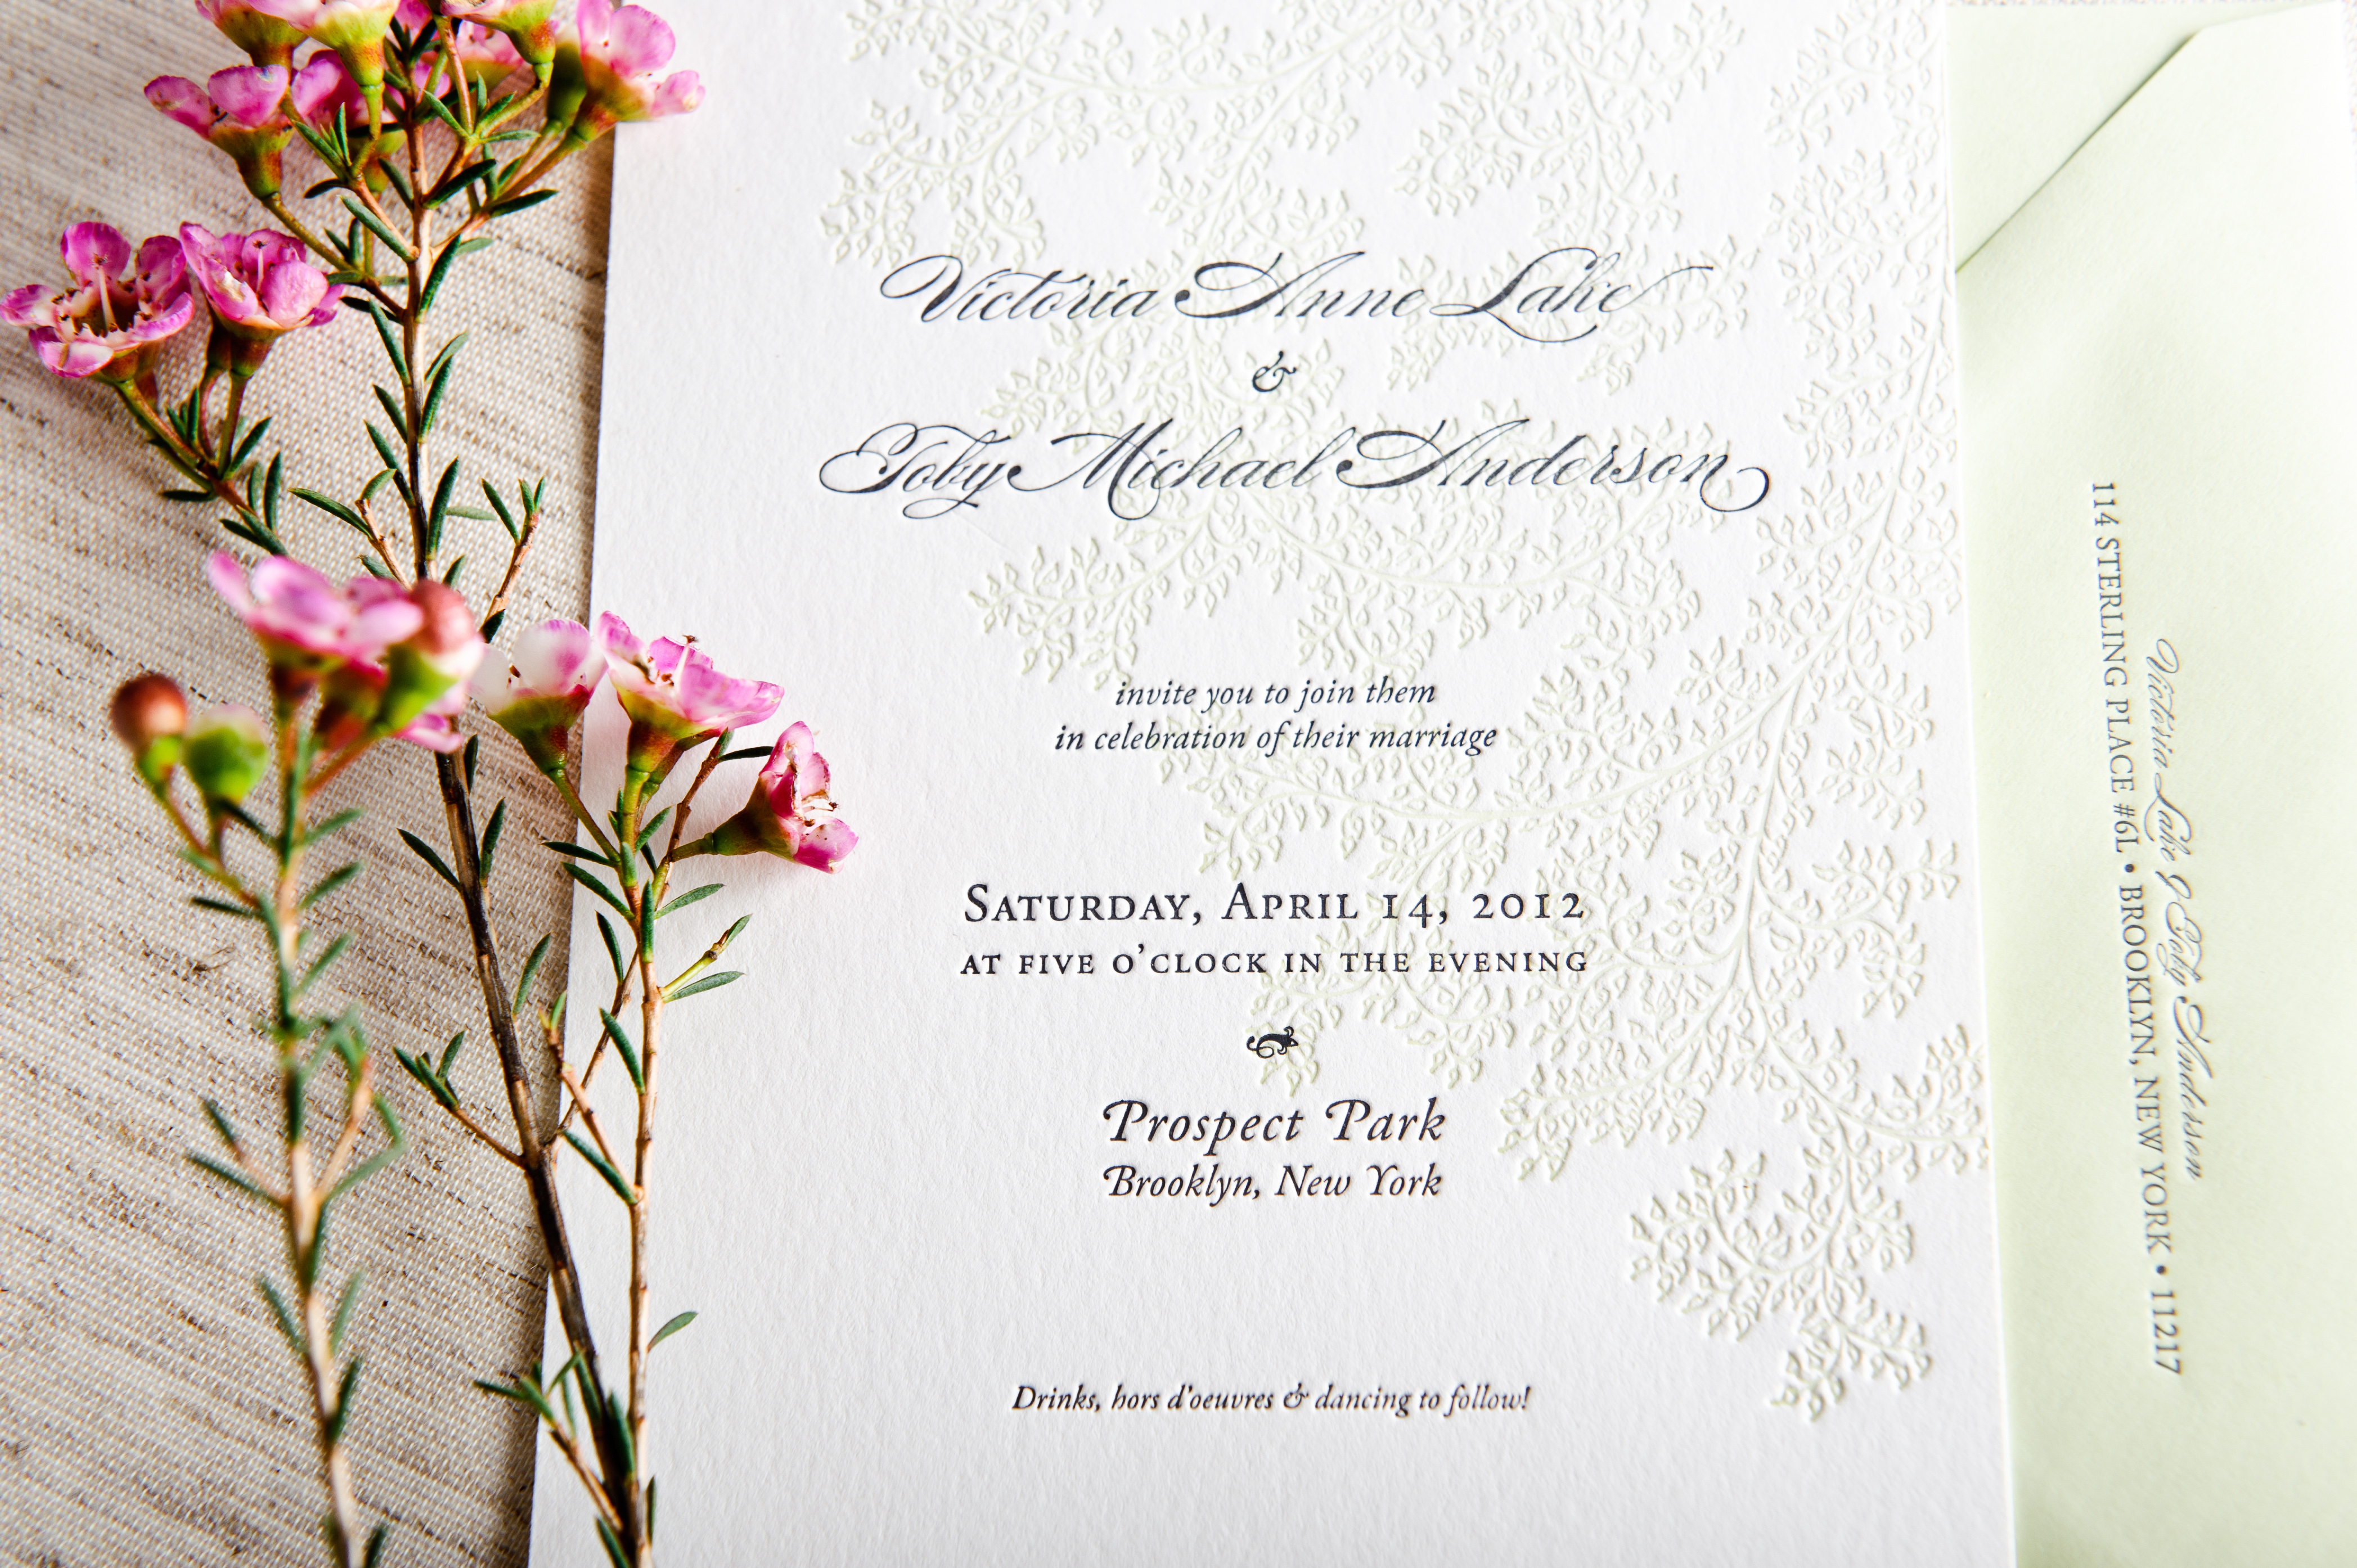 Sample Wedding Invitation Sample